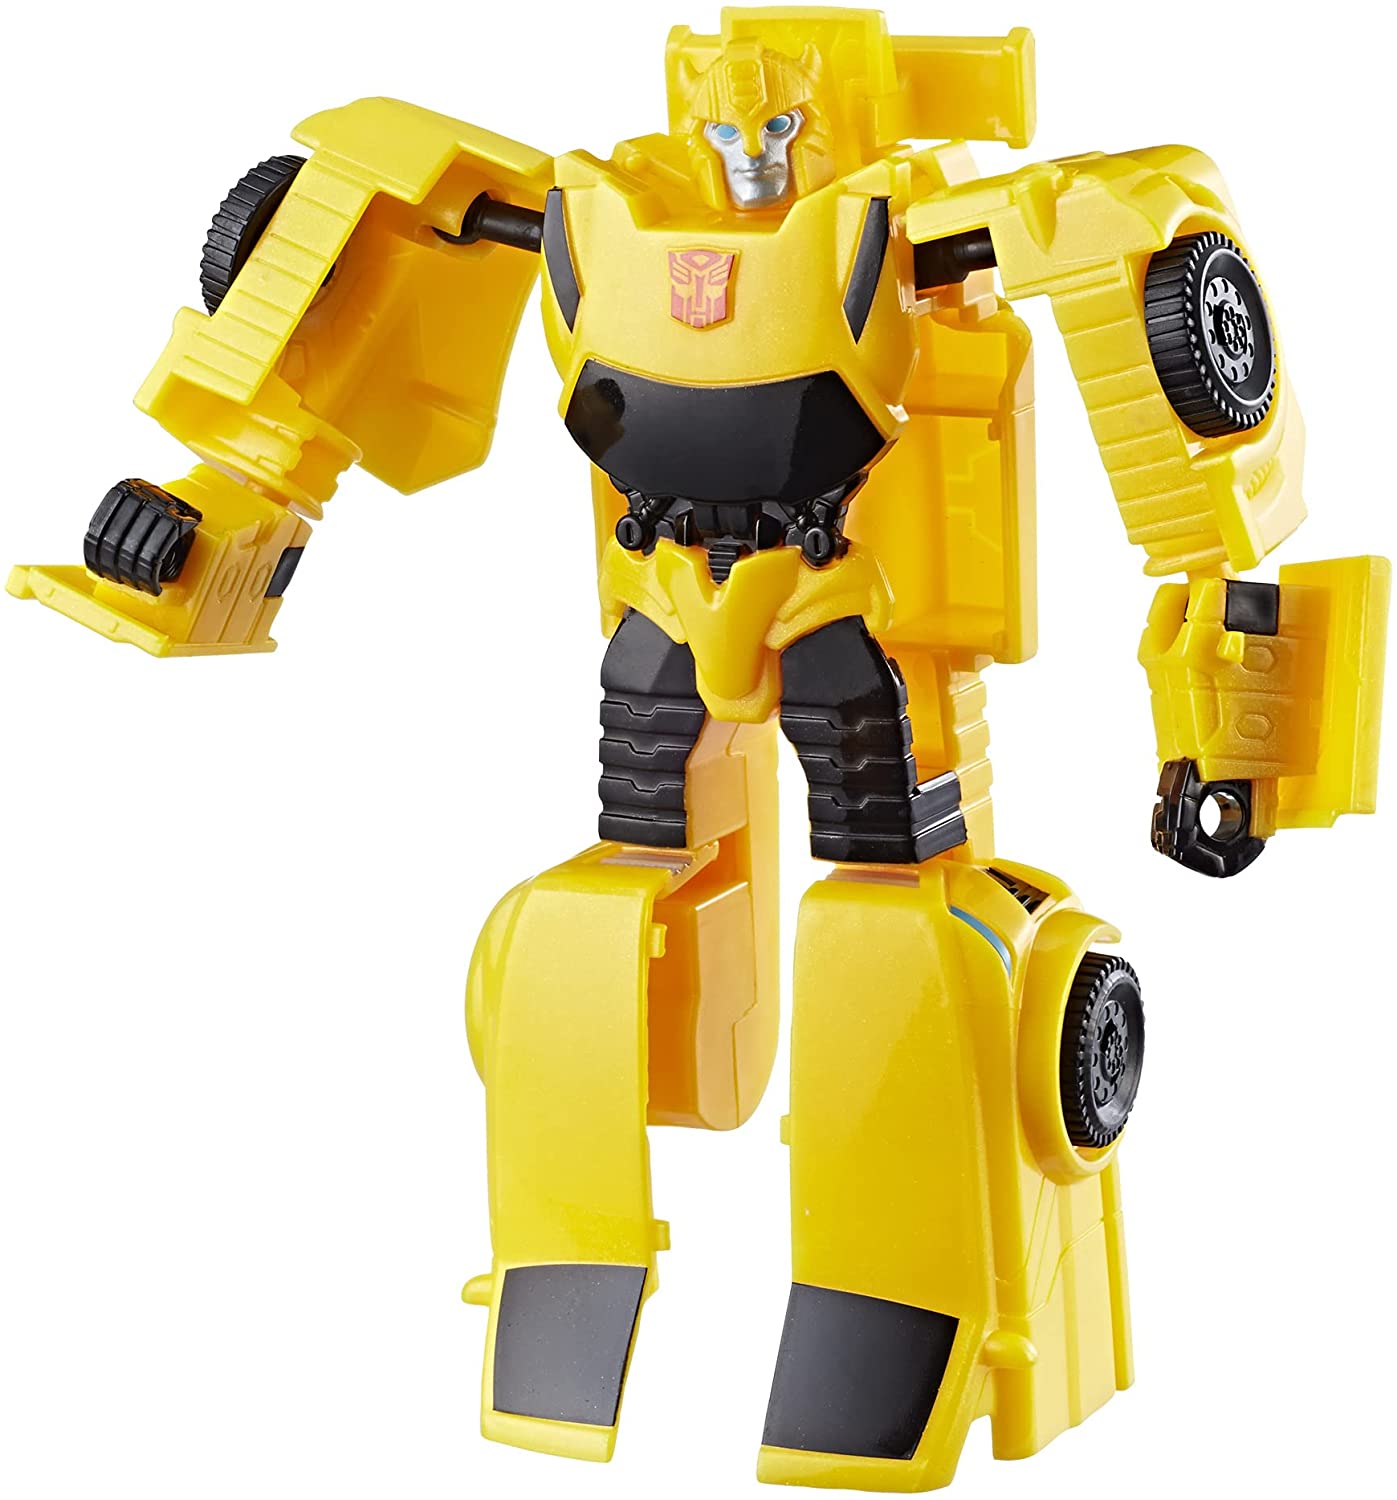 Transformers Prime - Bumblebee - O Espaço Virtual do Colecionador